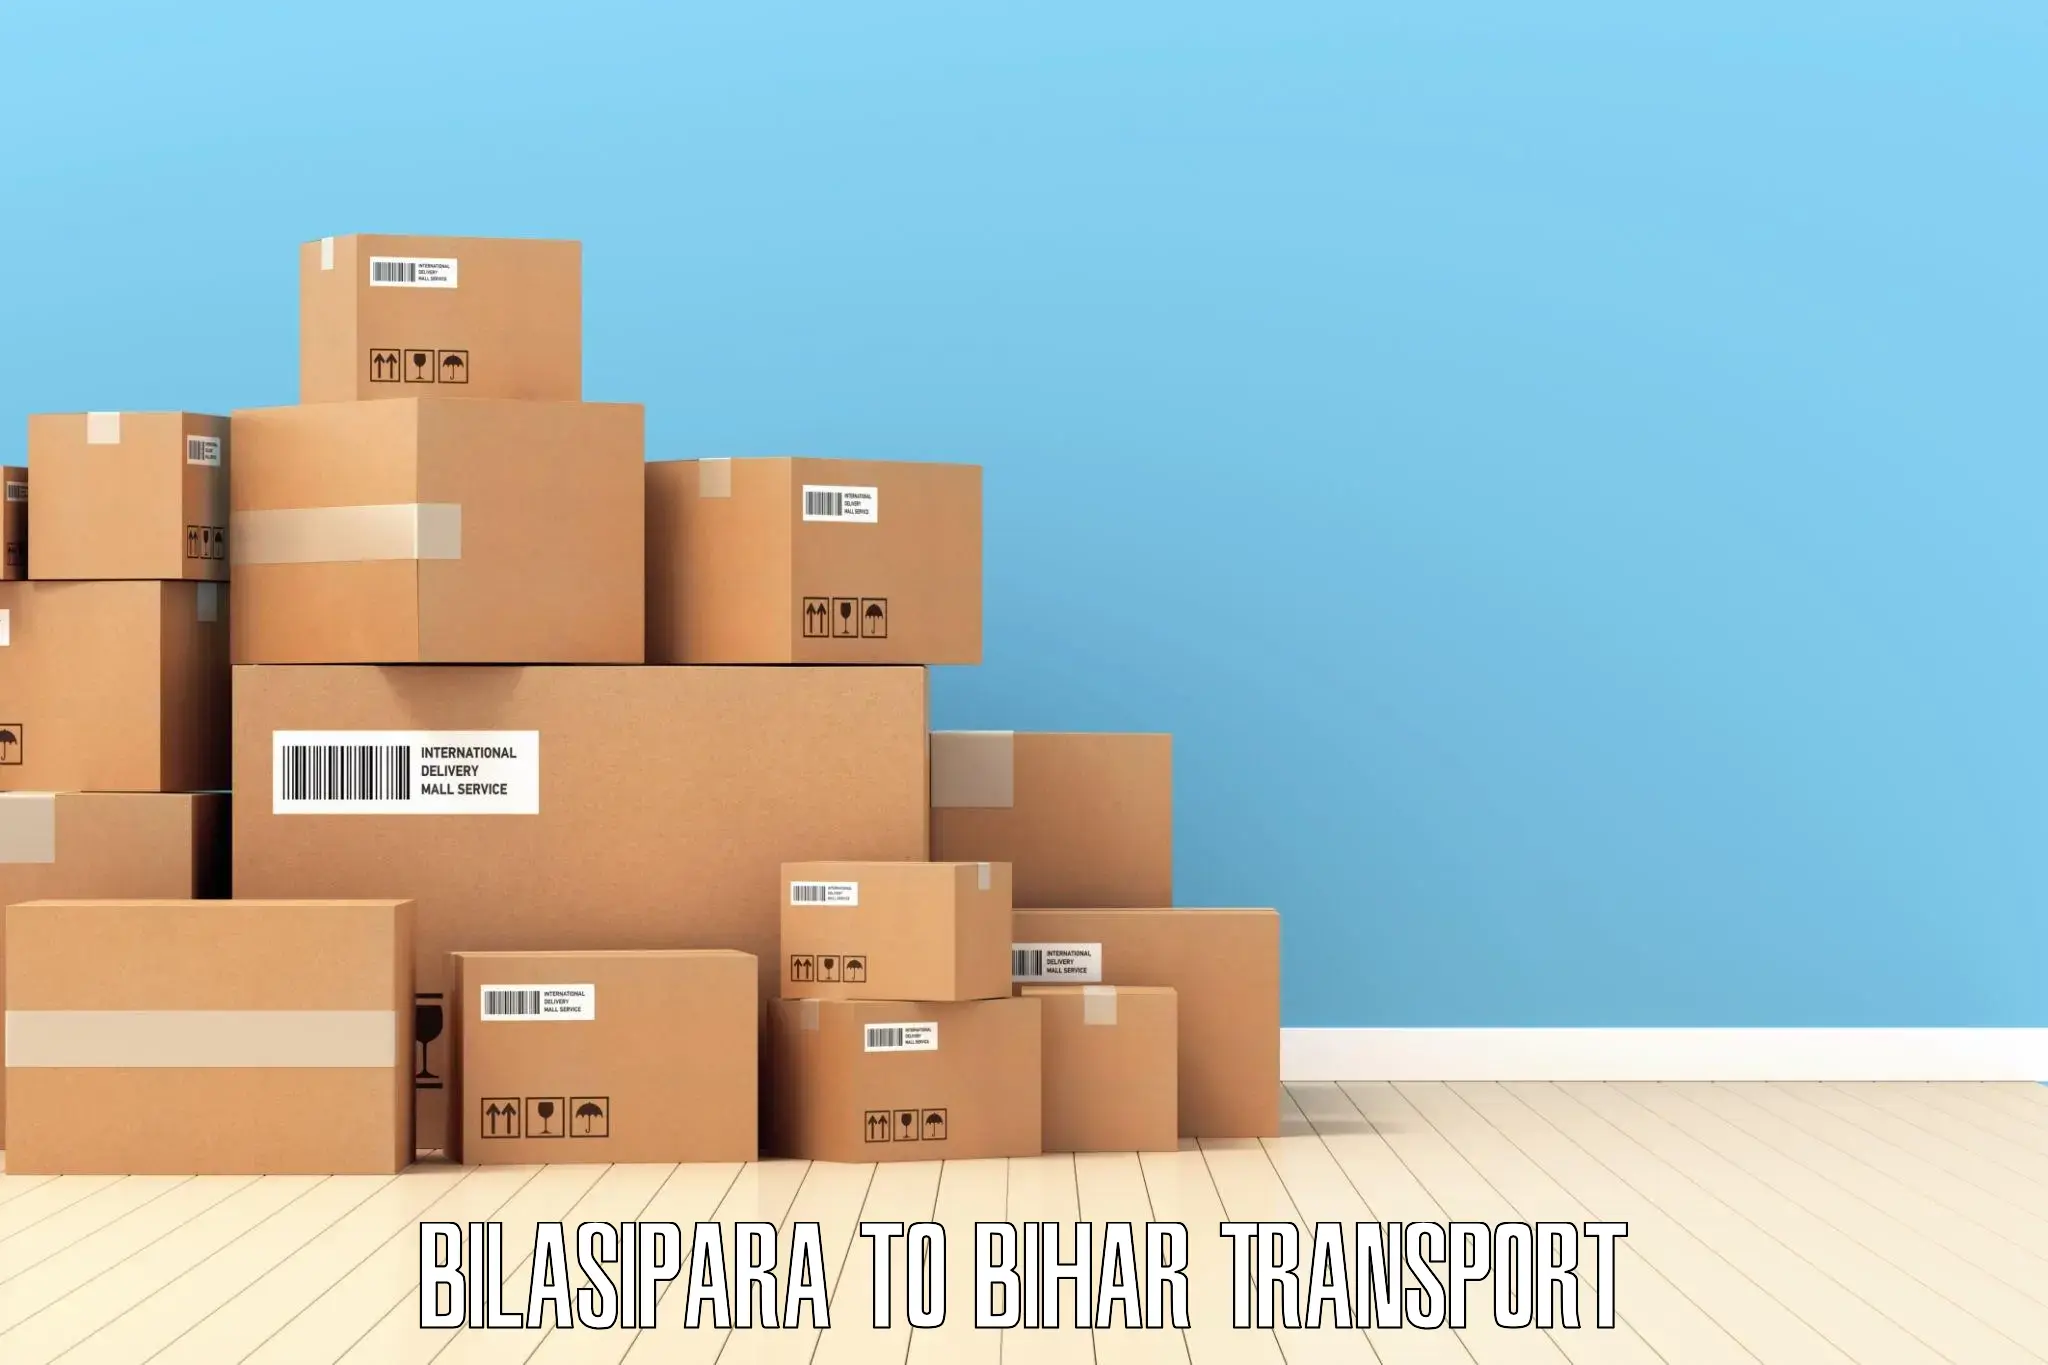 Online transport Bilasipara to Katihar